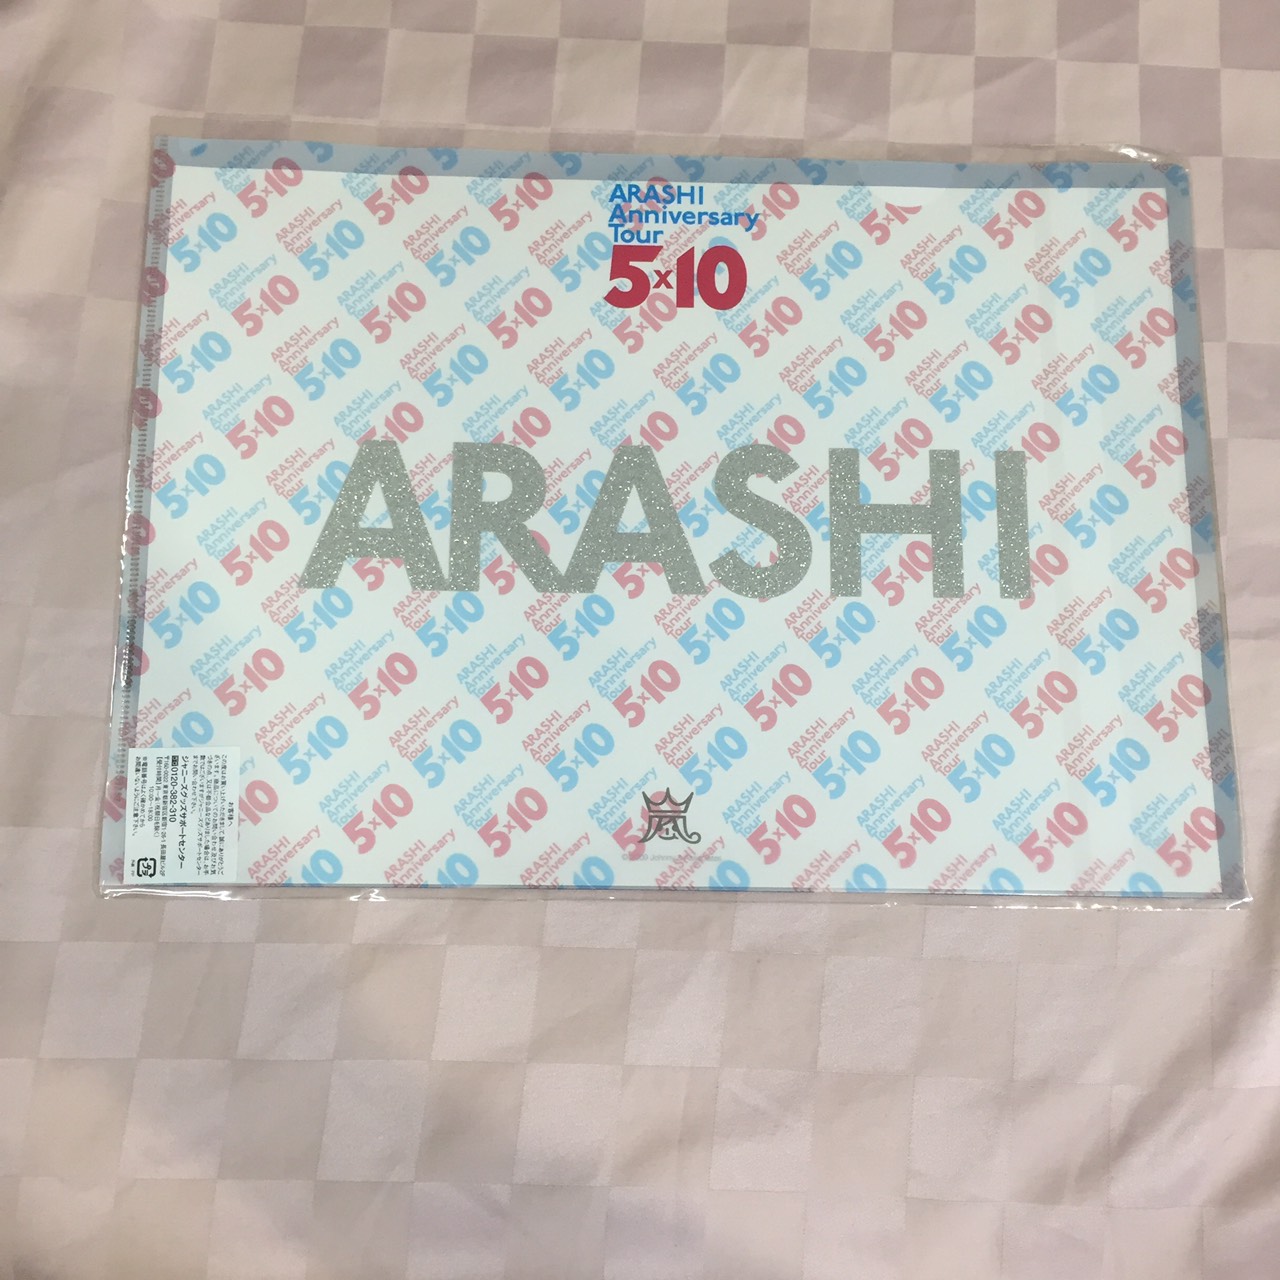 【周邊】ARASHI Anniversary Tour 5 X10 グッズ詳細